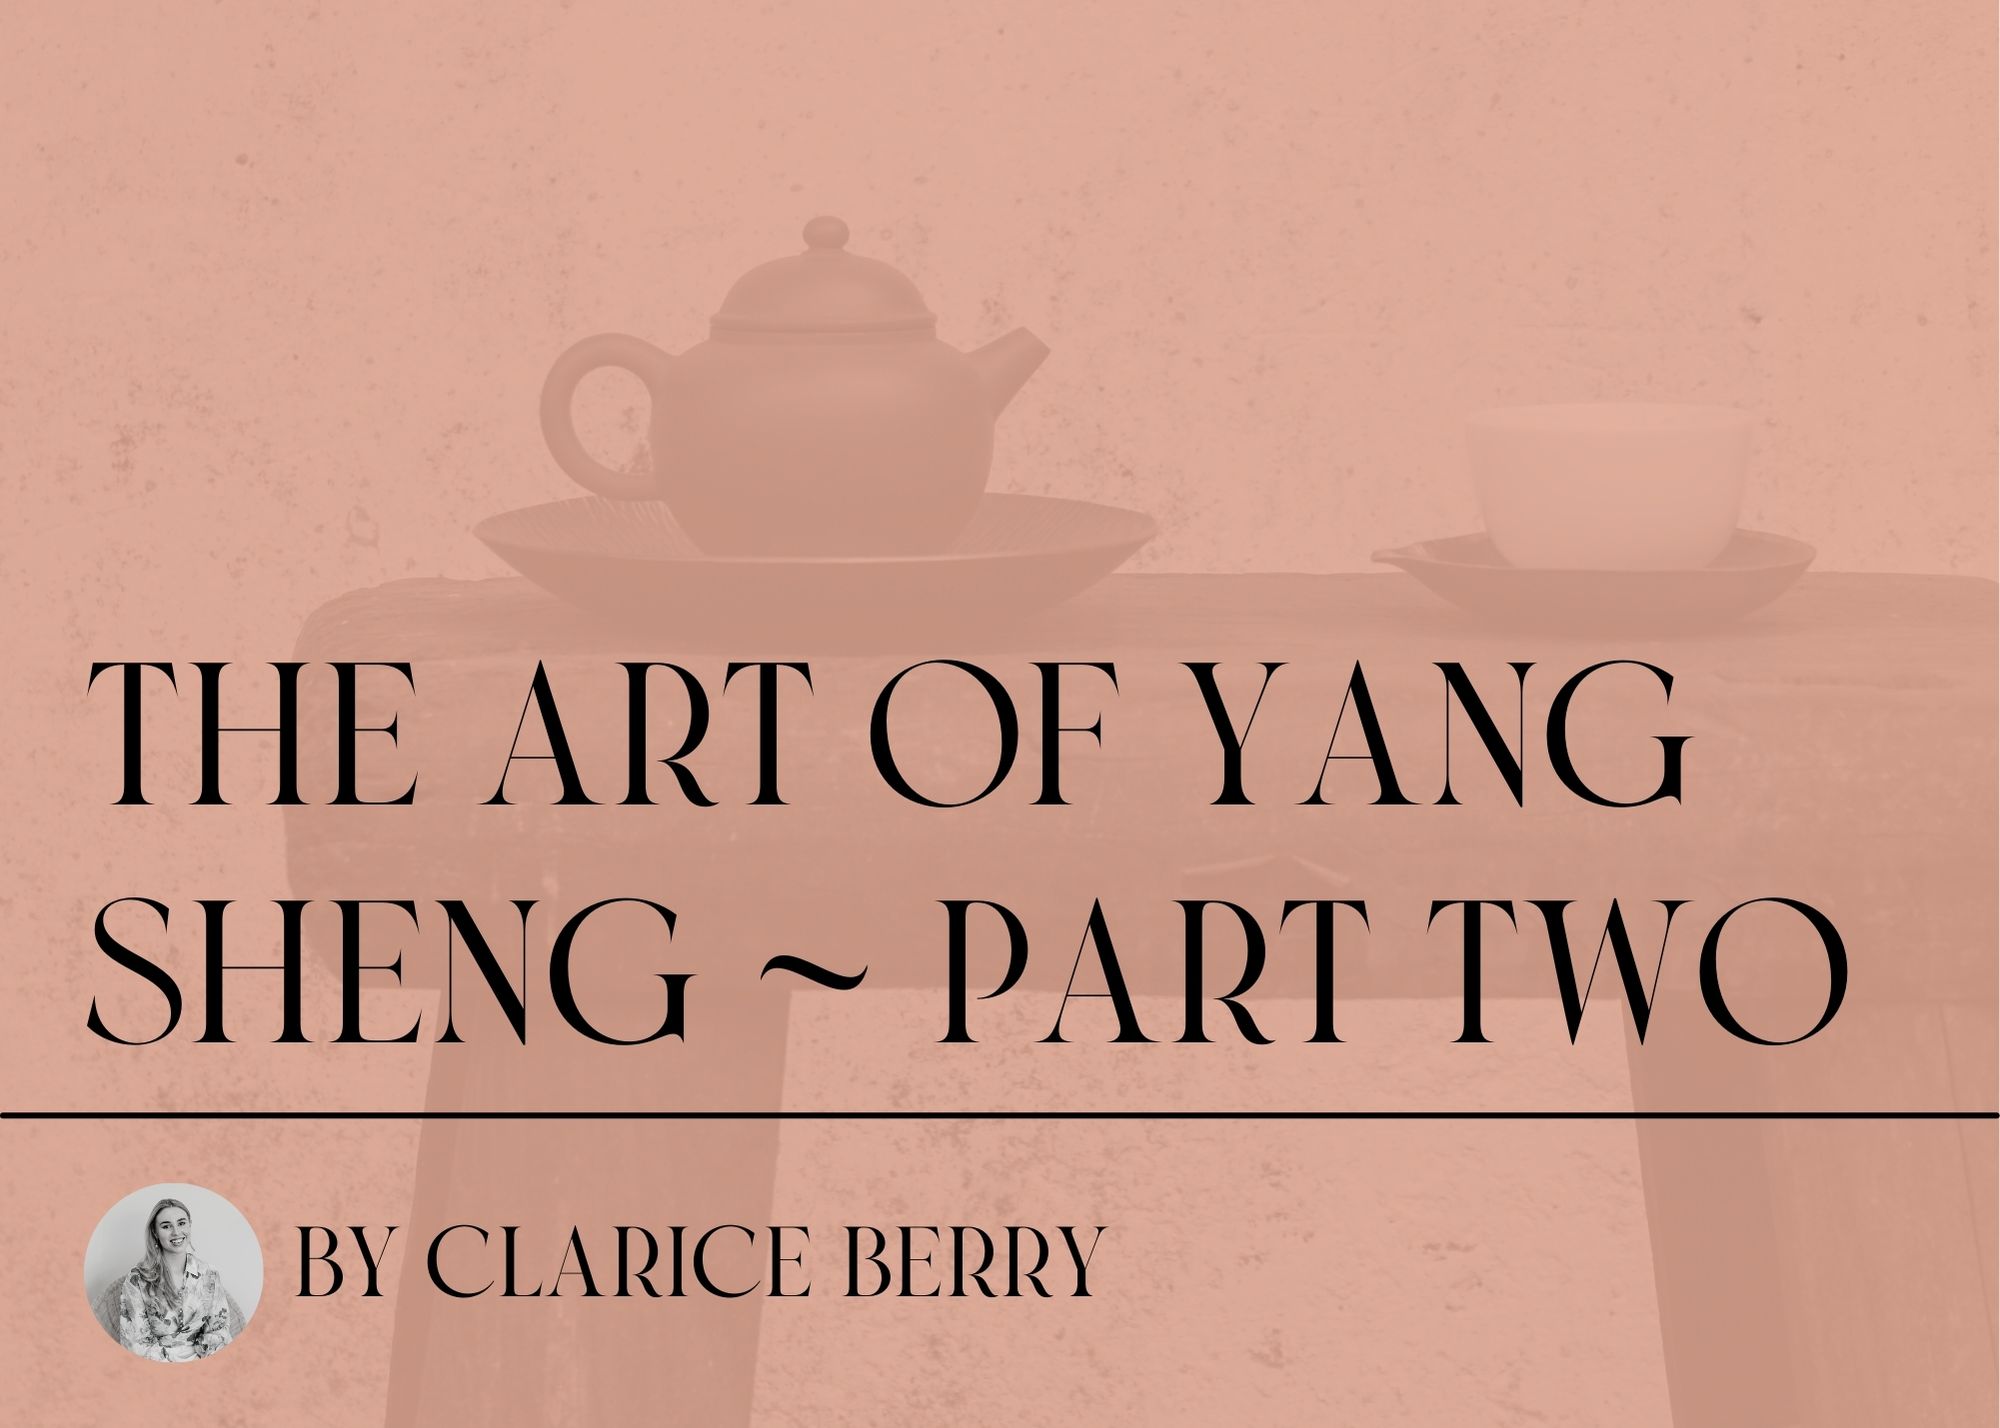 The Art of Yang Sheng